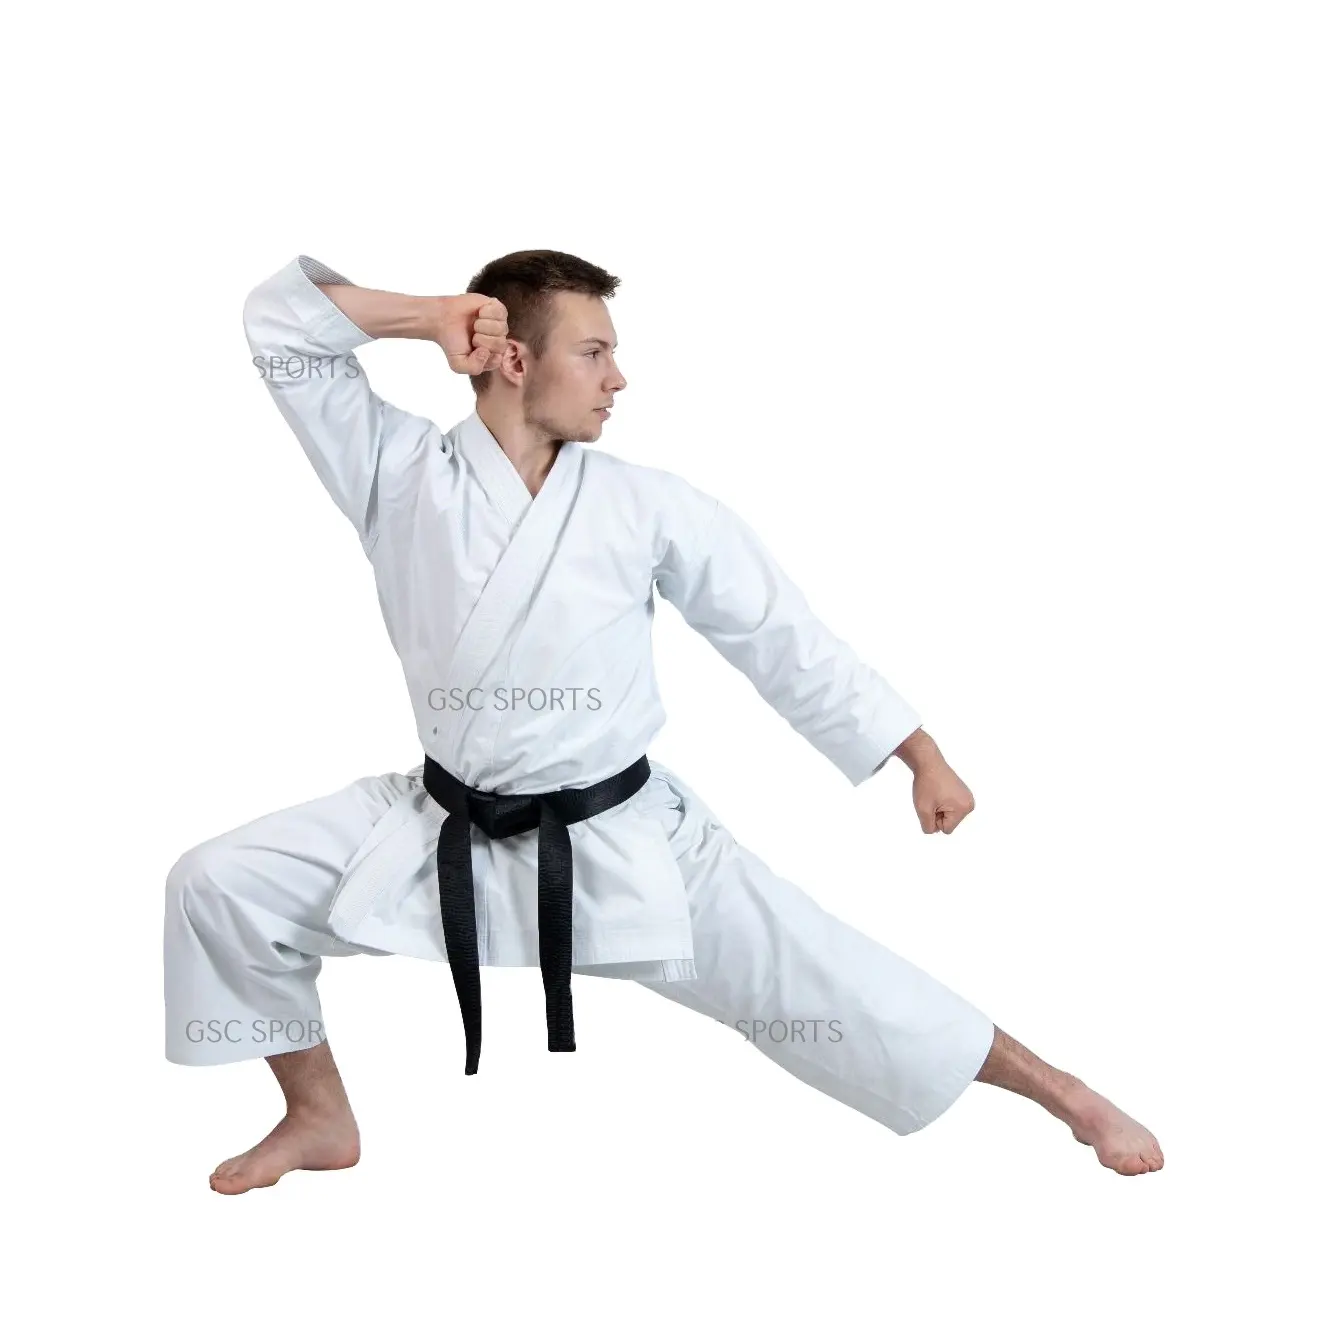 Hàng Mới Về Đồng Phục Karate Võ Thuật Bộ Đồ Karate Chất Lượng Cao Cho Nam Phong Cách Chính Xác Và Thoải Mái Để Tập Luyện